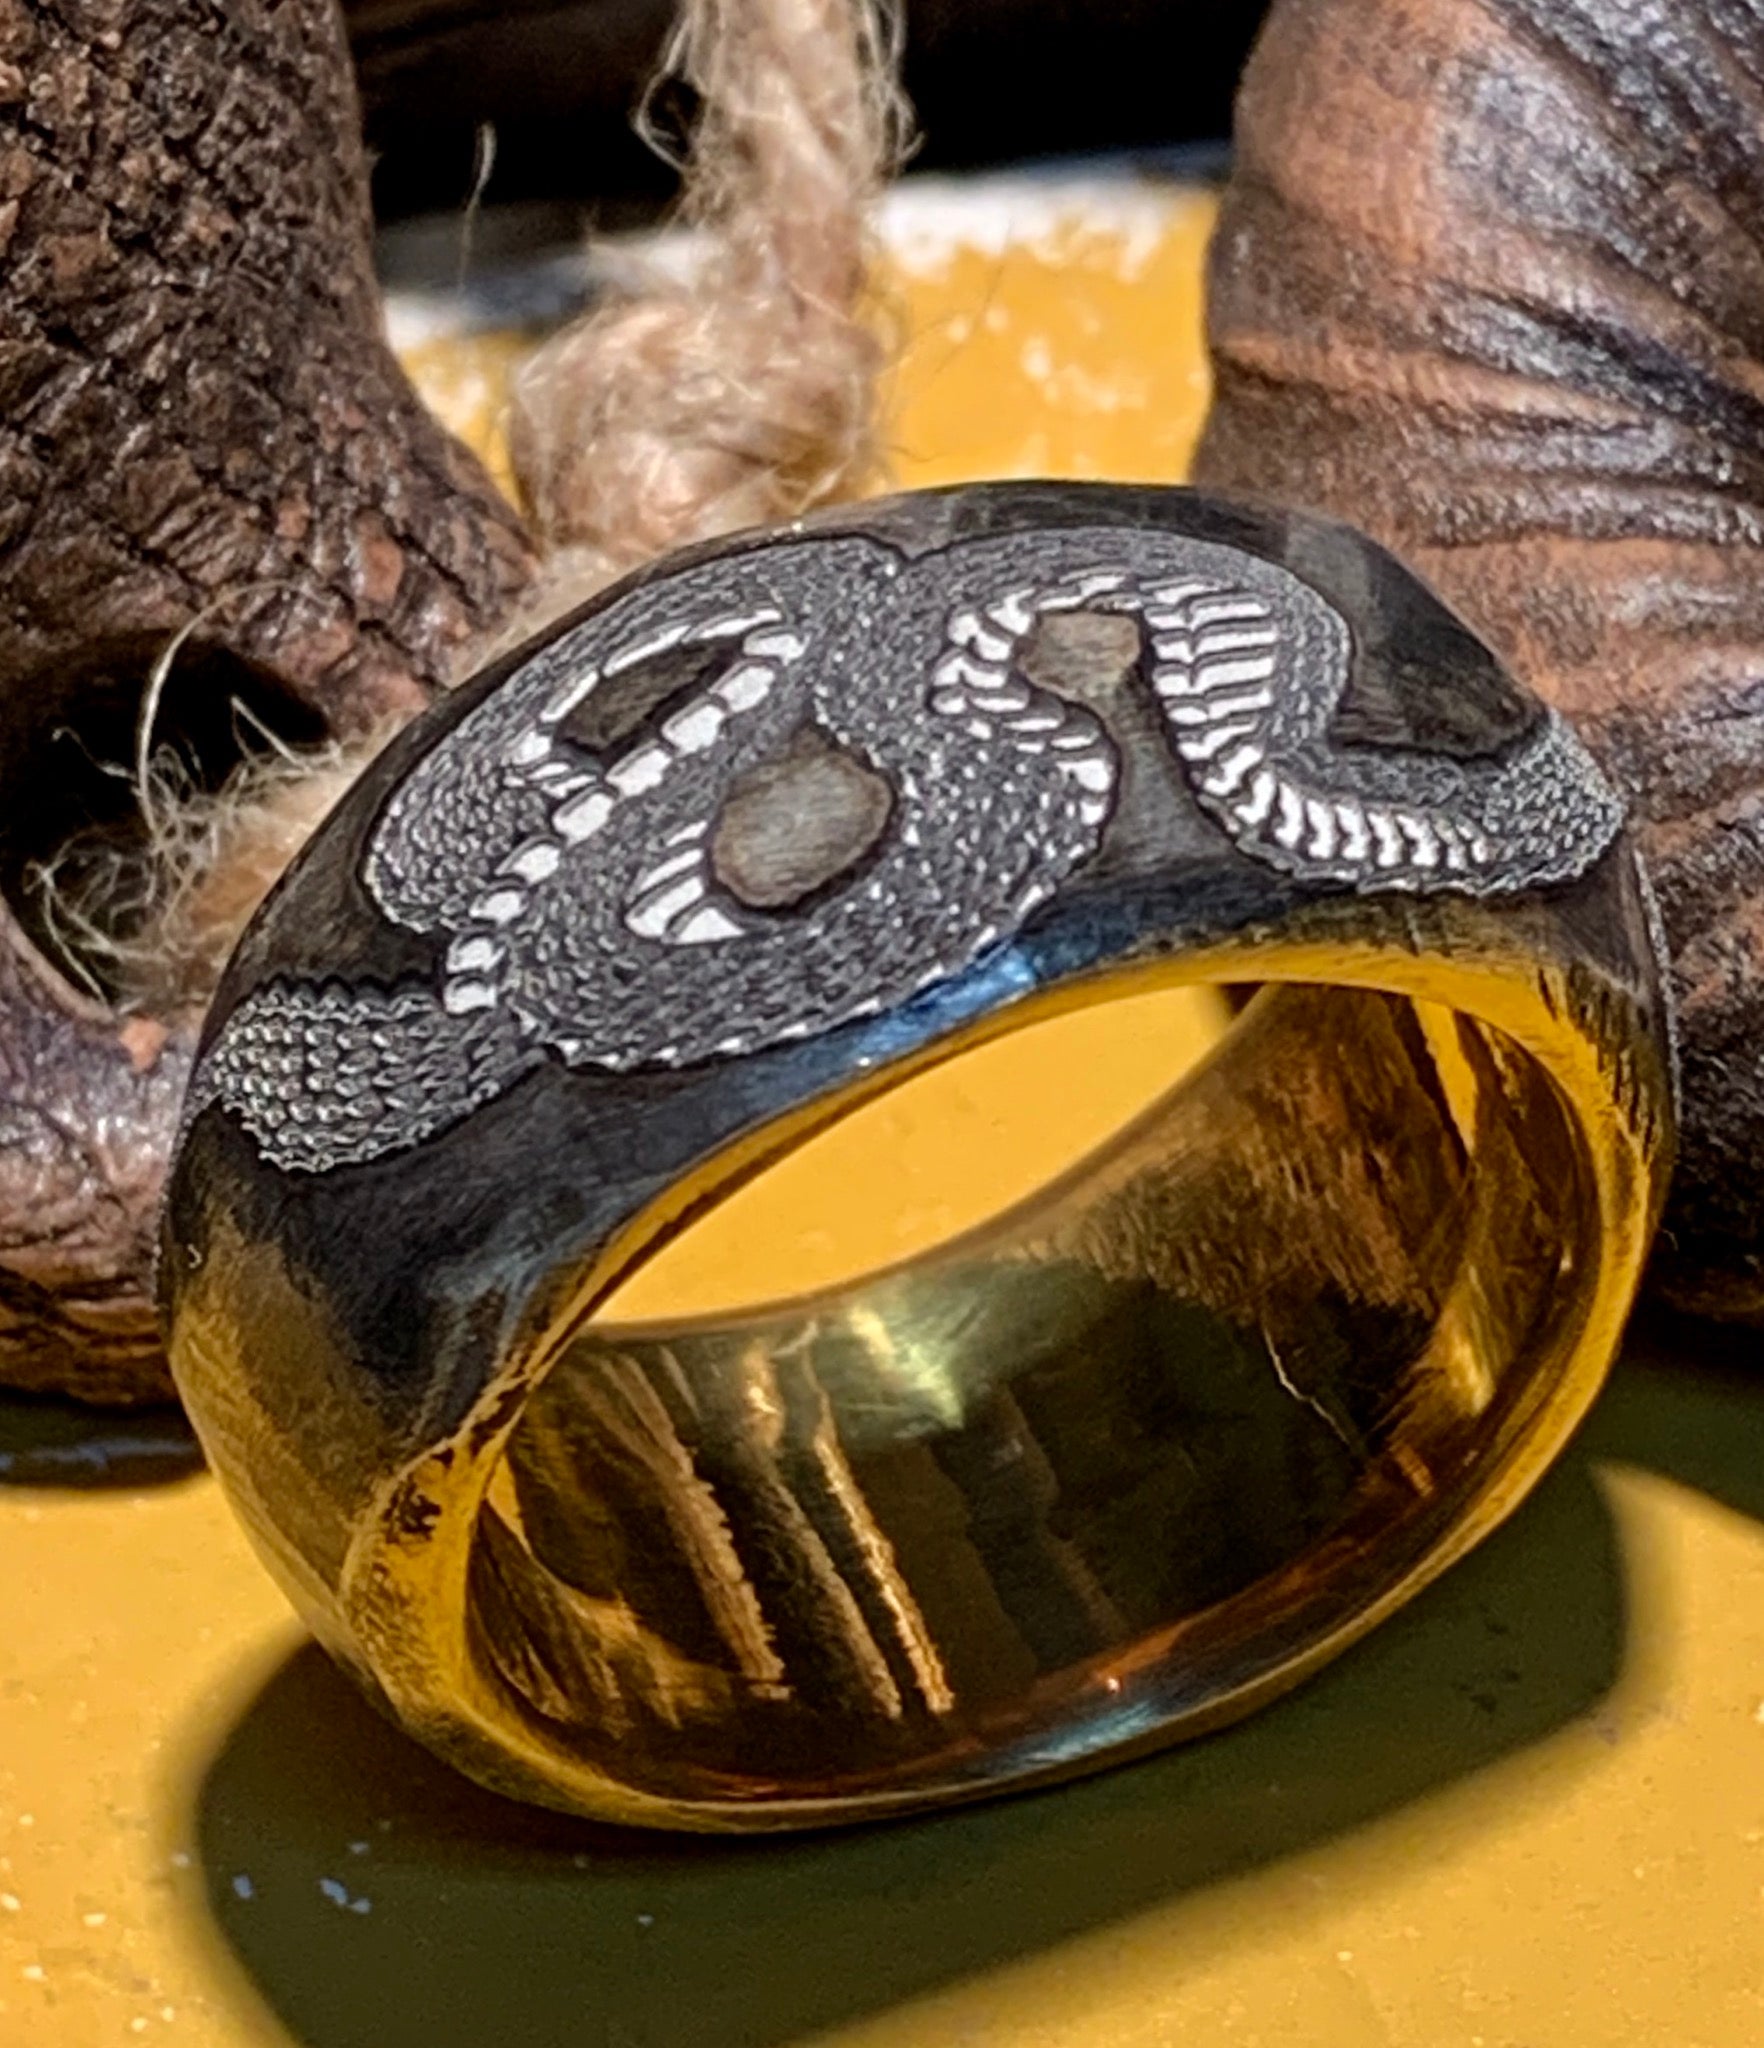 Baby Rattlesnake Ring, Silver Snake Ring, Coiled Snake Ring, Snake Jewelry,  Gift for Her, Gift for Him, Gift for Women, Couples Gift - Etsy | Snake  jewelry, Snake ring silver, Jewelry